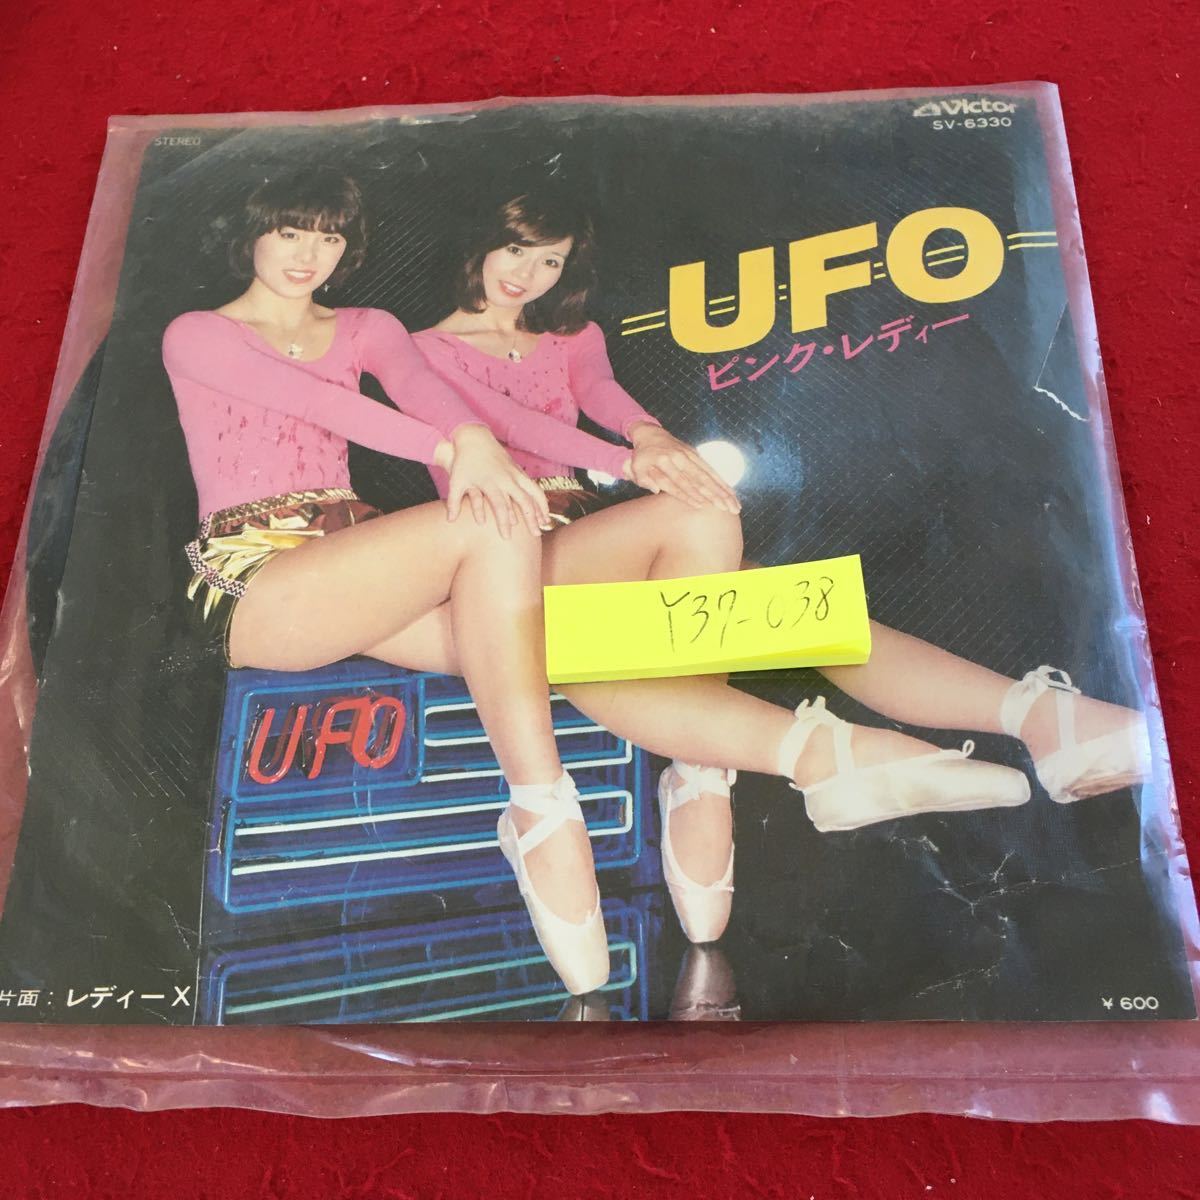 Y38-038 ピンク・レディー UFO ビクター 片面:レディーX レコード 袋入り 傷無し ステレオ45 SV-6372 阿久悠 作詞 都倉俊一作・編曲_傷、汚れ有り